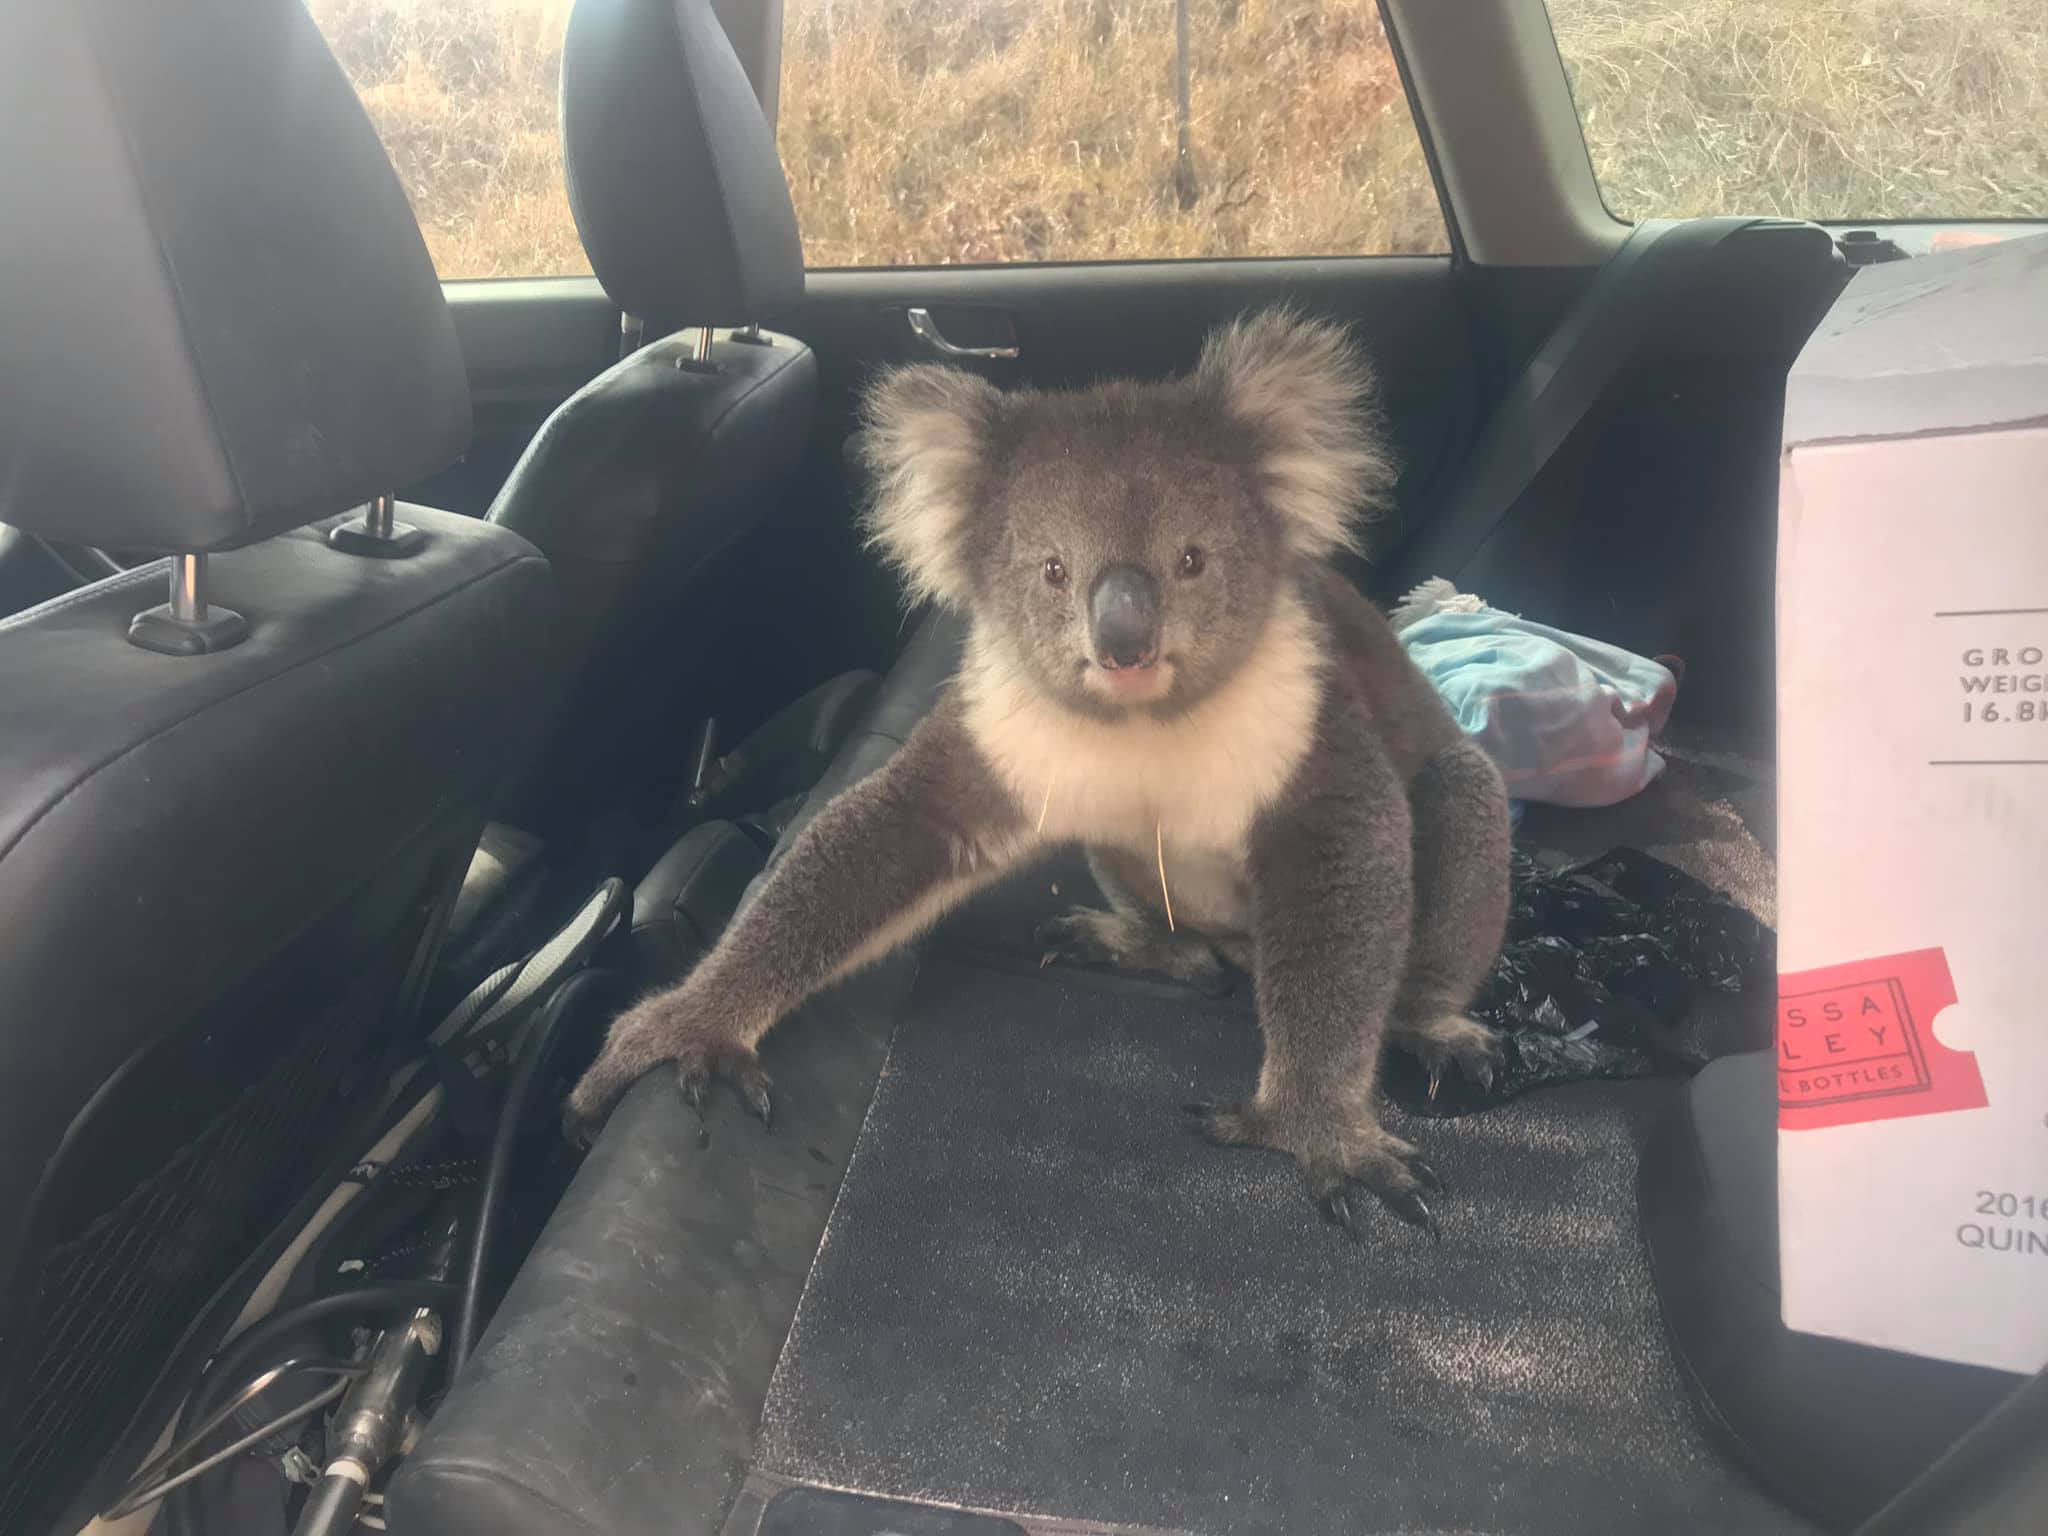 foto Koala acalorado se refugia en carro con aire acondicionado 18 marzo 2019